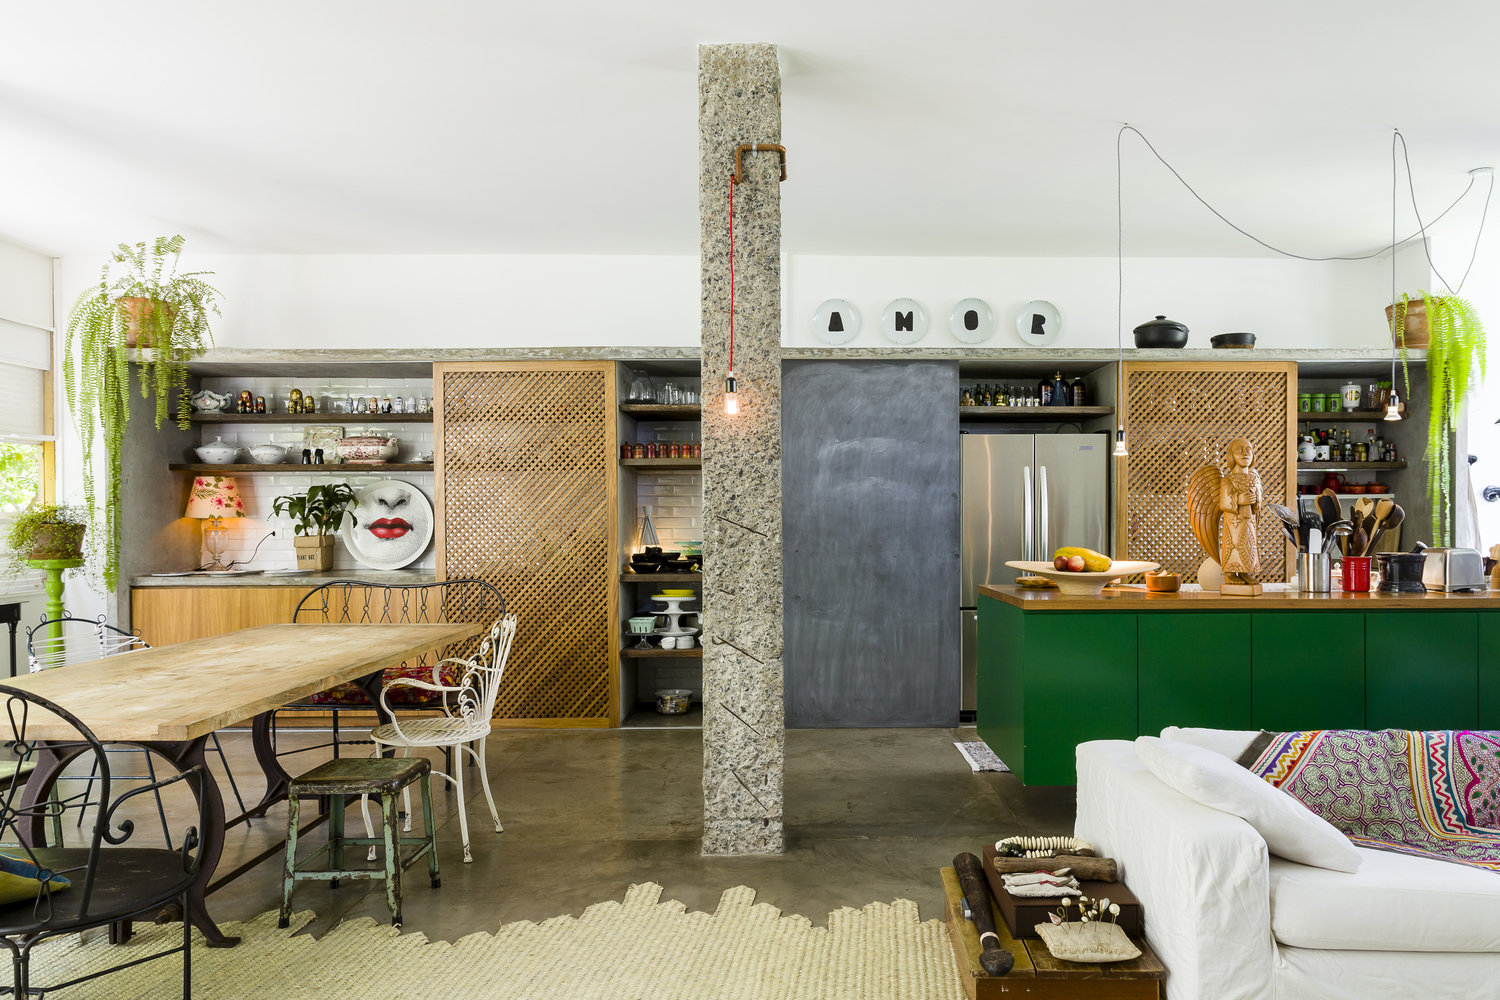 Hình ảnh phòng bếp, bàn ăn và phòng khách được thiết kế liên thông trong cùng một không gian